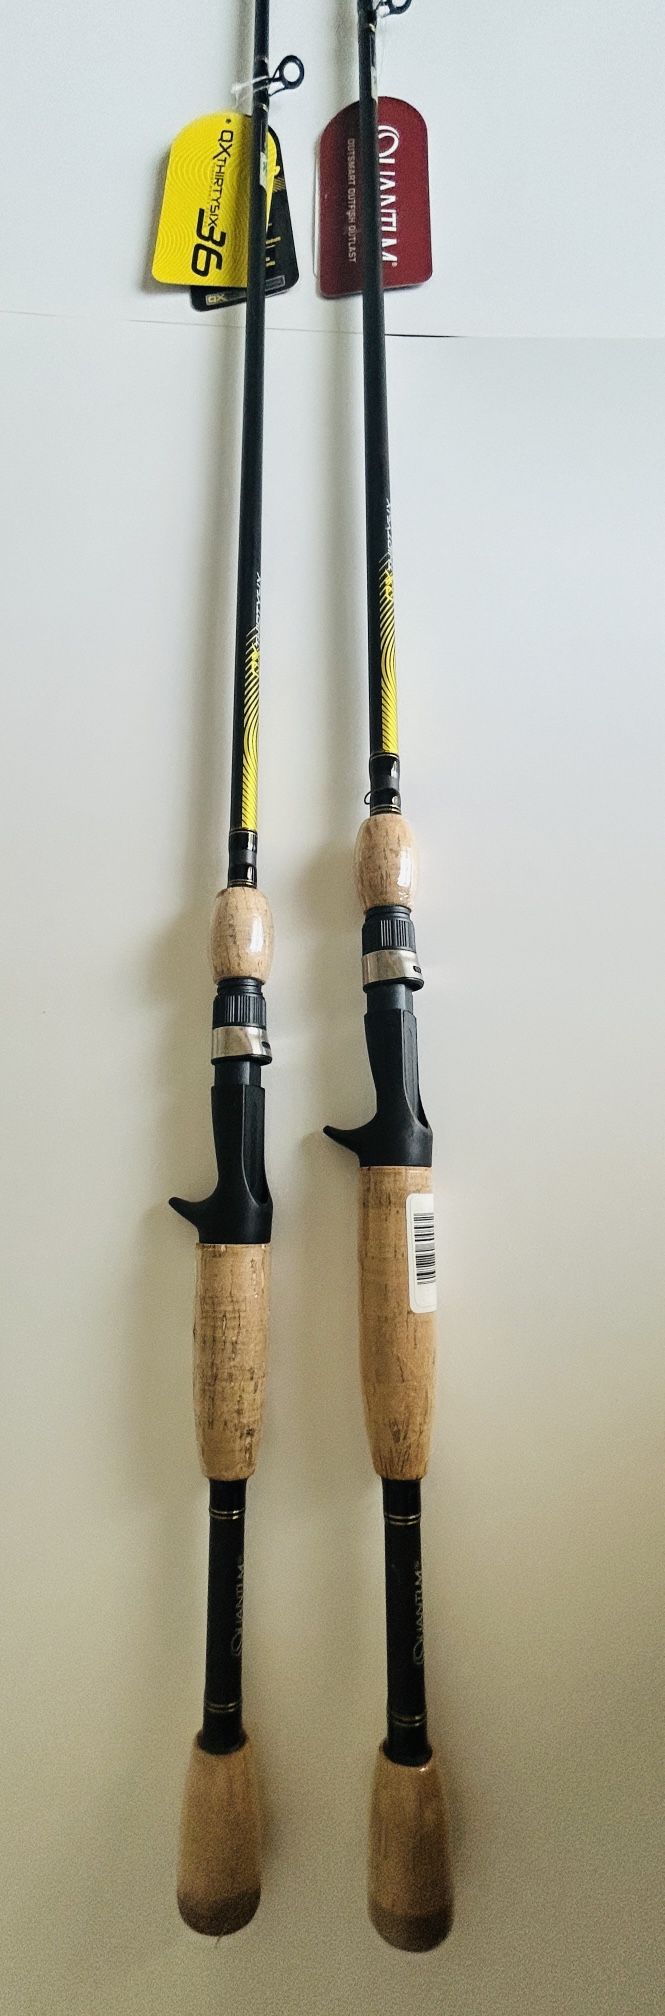 Set Of 2x(two) Quantum QX36 Casting Fishing Rod, IM7 Graphite Fishing Pole